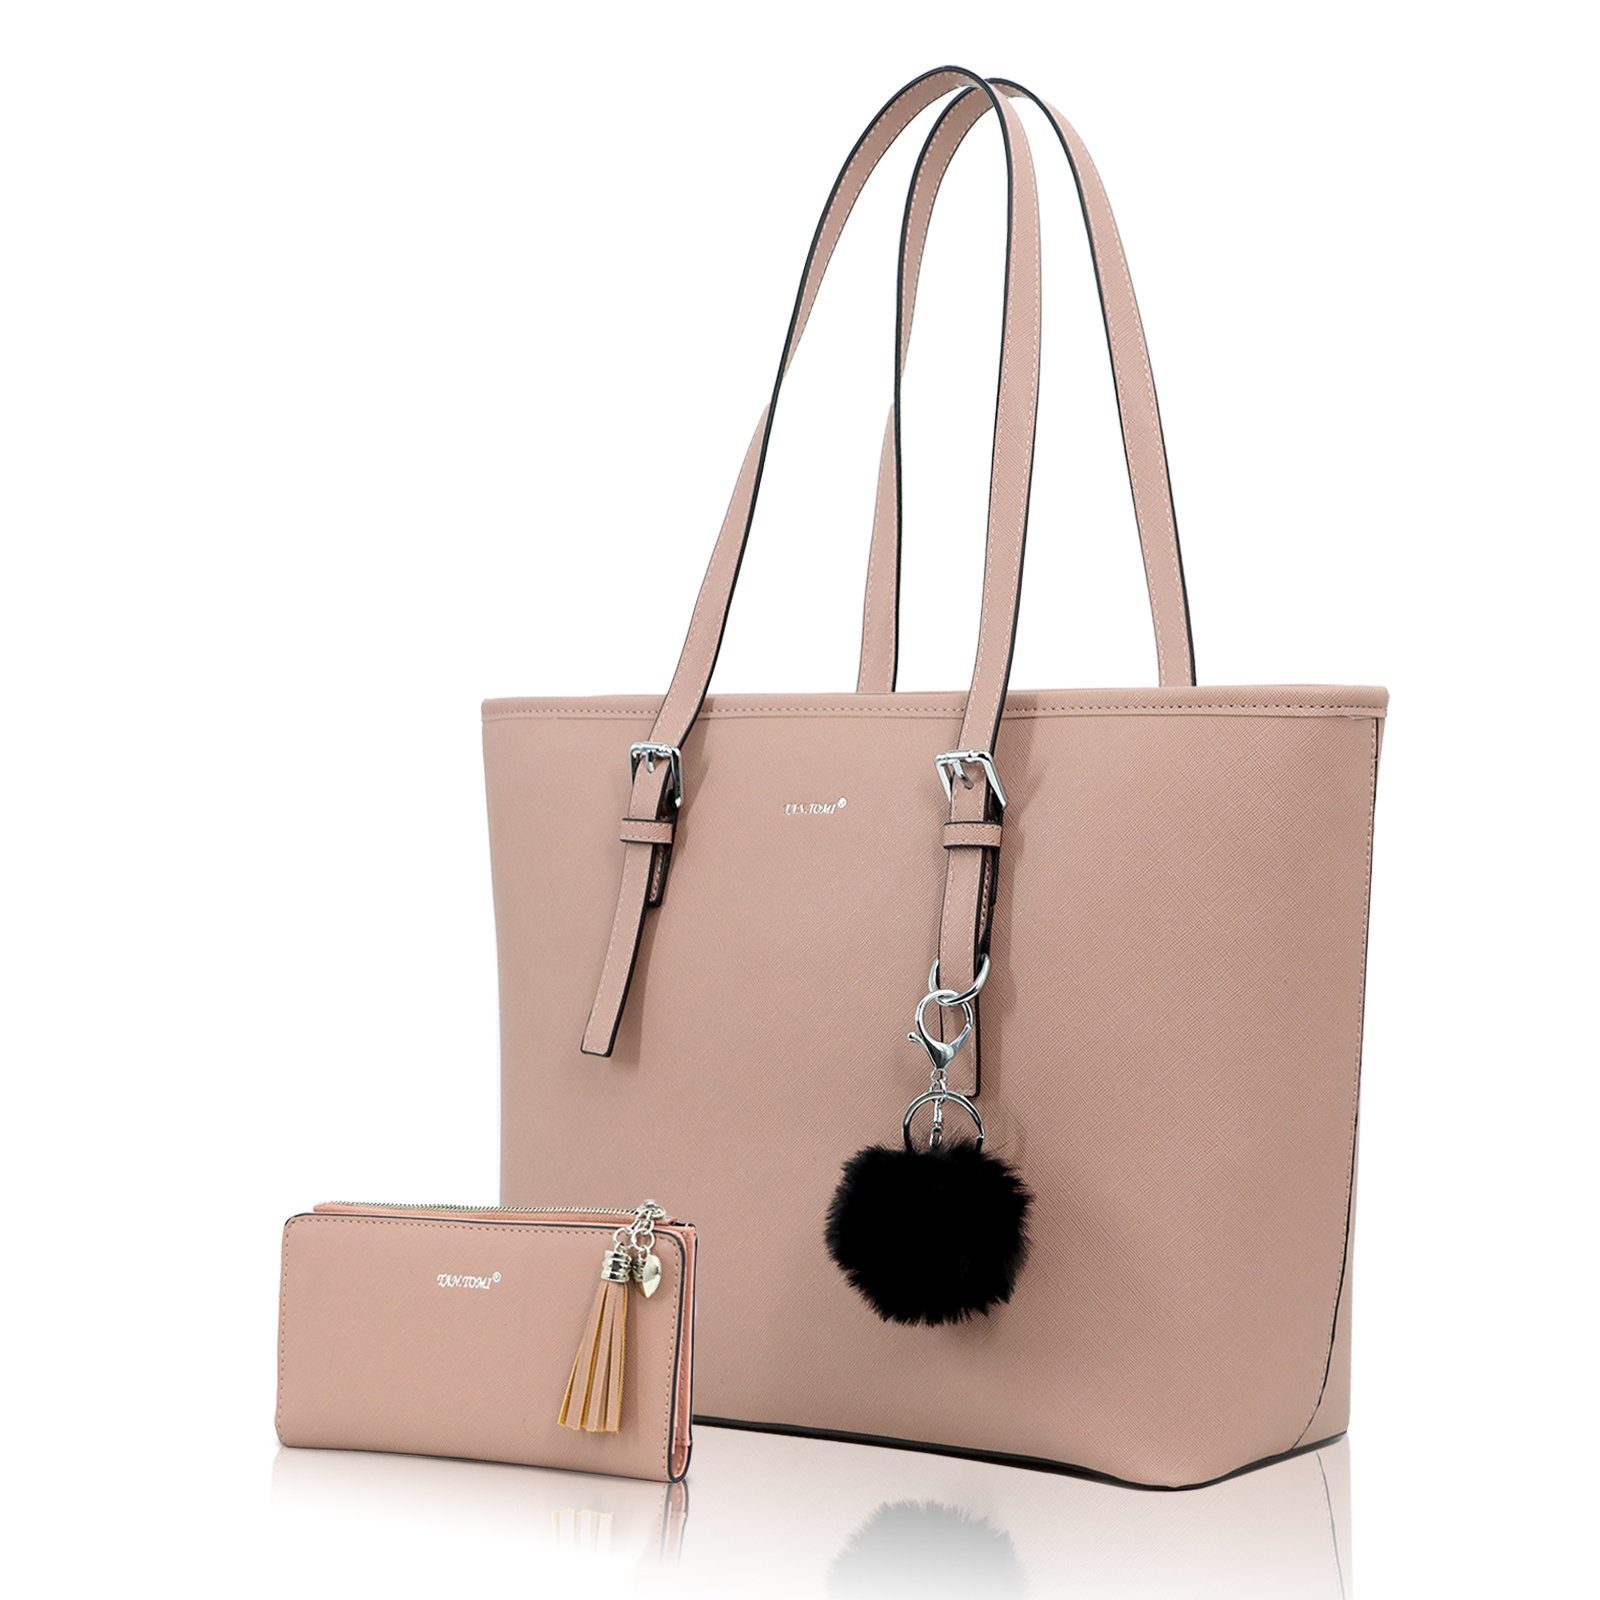 TAN.TOMI Shopper »Handtasche Damen mit Geldbörse und Schlüsselanhänger,Groß  Elegant Damen Handtasche, ​Geschenke für Frauen«, in schlichter Optik  online kaufen | OTTO